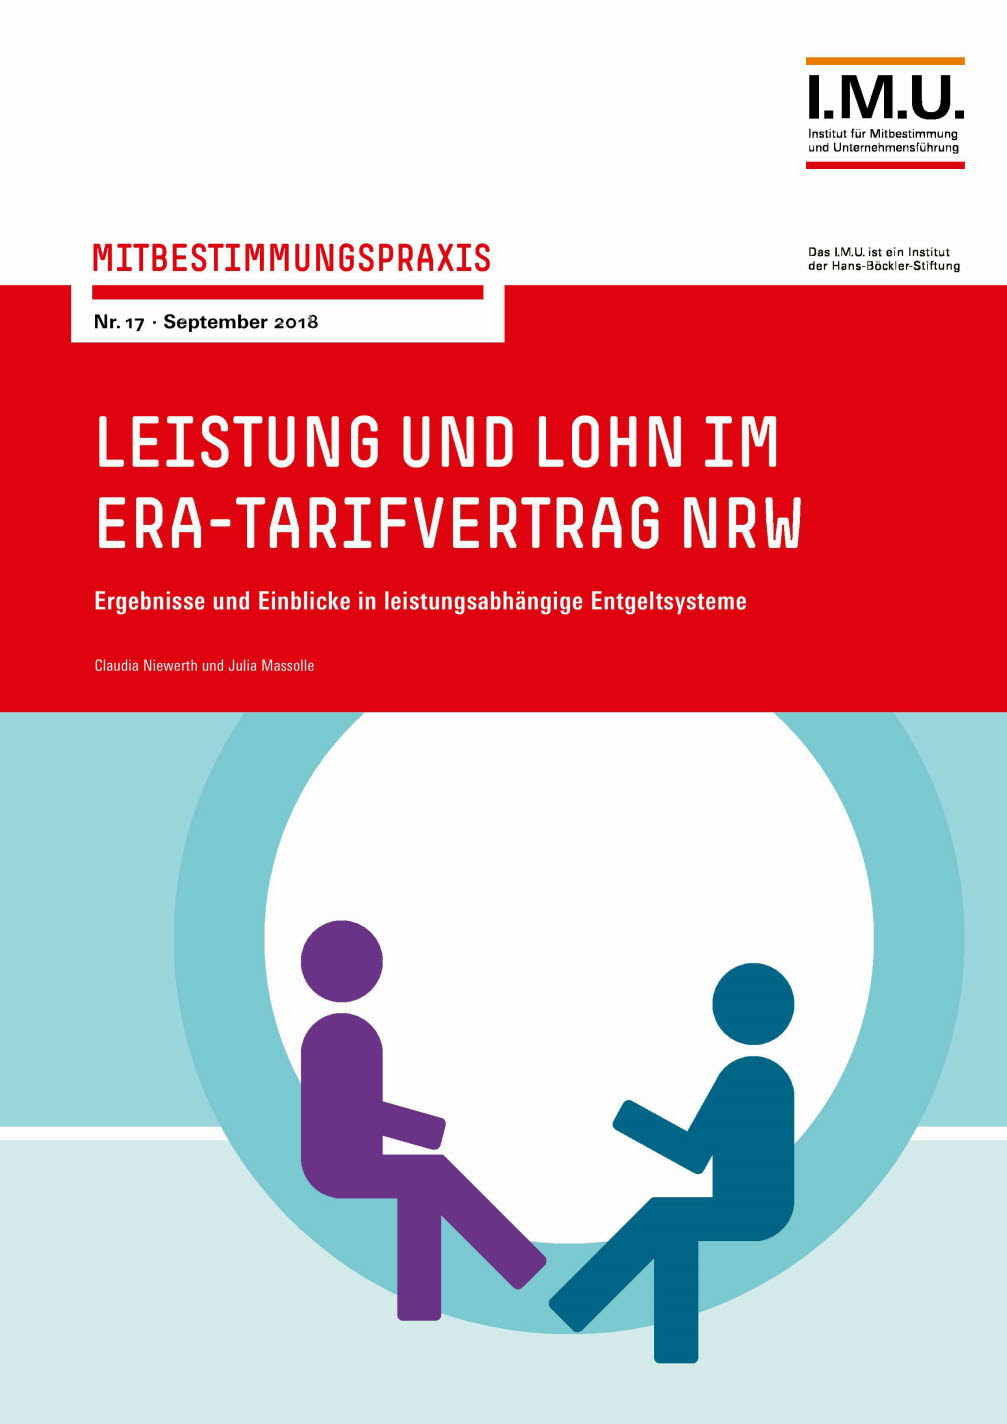 Leistung und Lohn im ERA-Tarifvertrag NRW